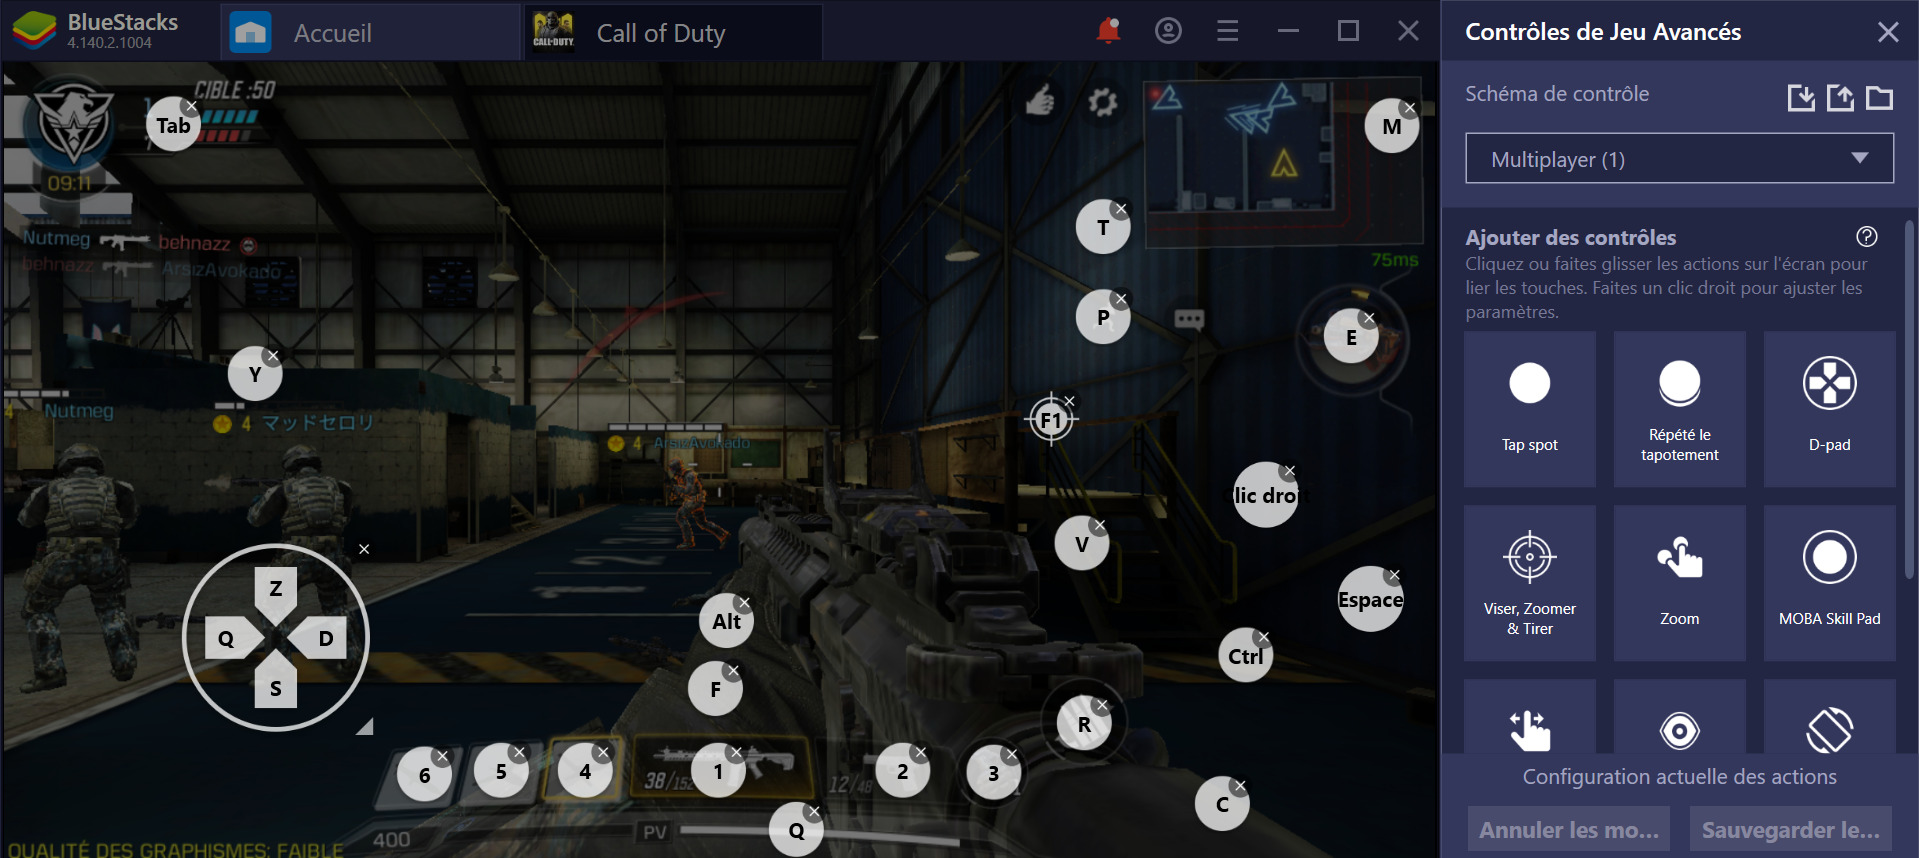 Call of Duty (CoD) Mobile sur PC débarque sur BlueStacks